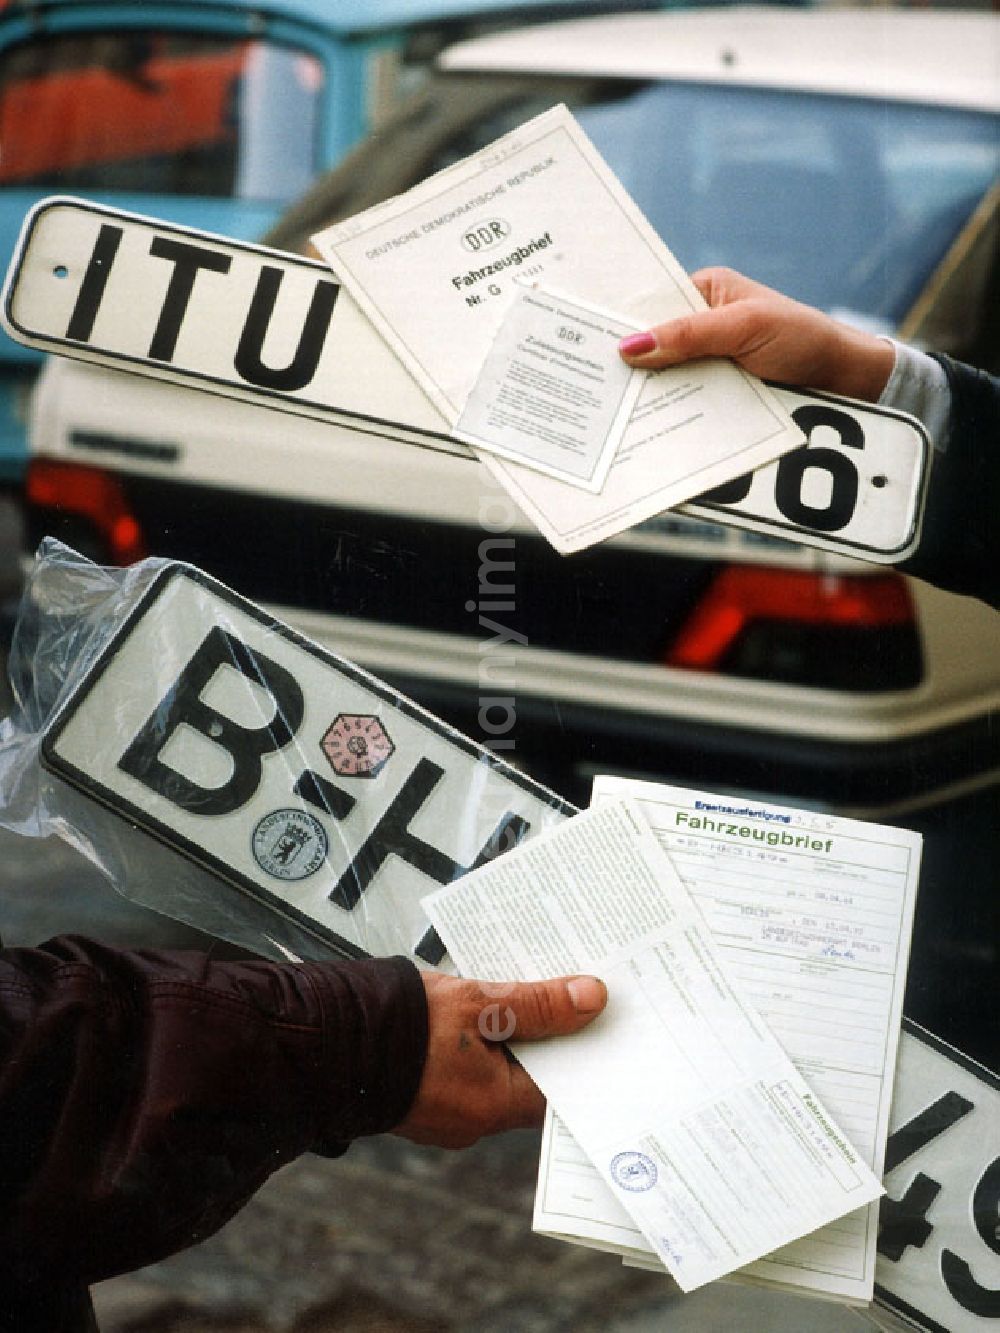 GDR image archive: Berlin - Umstellung der Autokennzeichen, alle Berliner Autos fahren bald nur mit dem Kennzeichen B. Hände halten DDR-Autokennzeichen, BRD-Autokennzeichen sowie jeweilige Autopapiere.